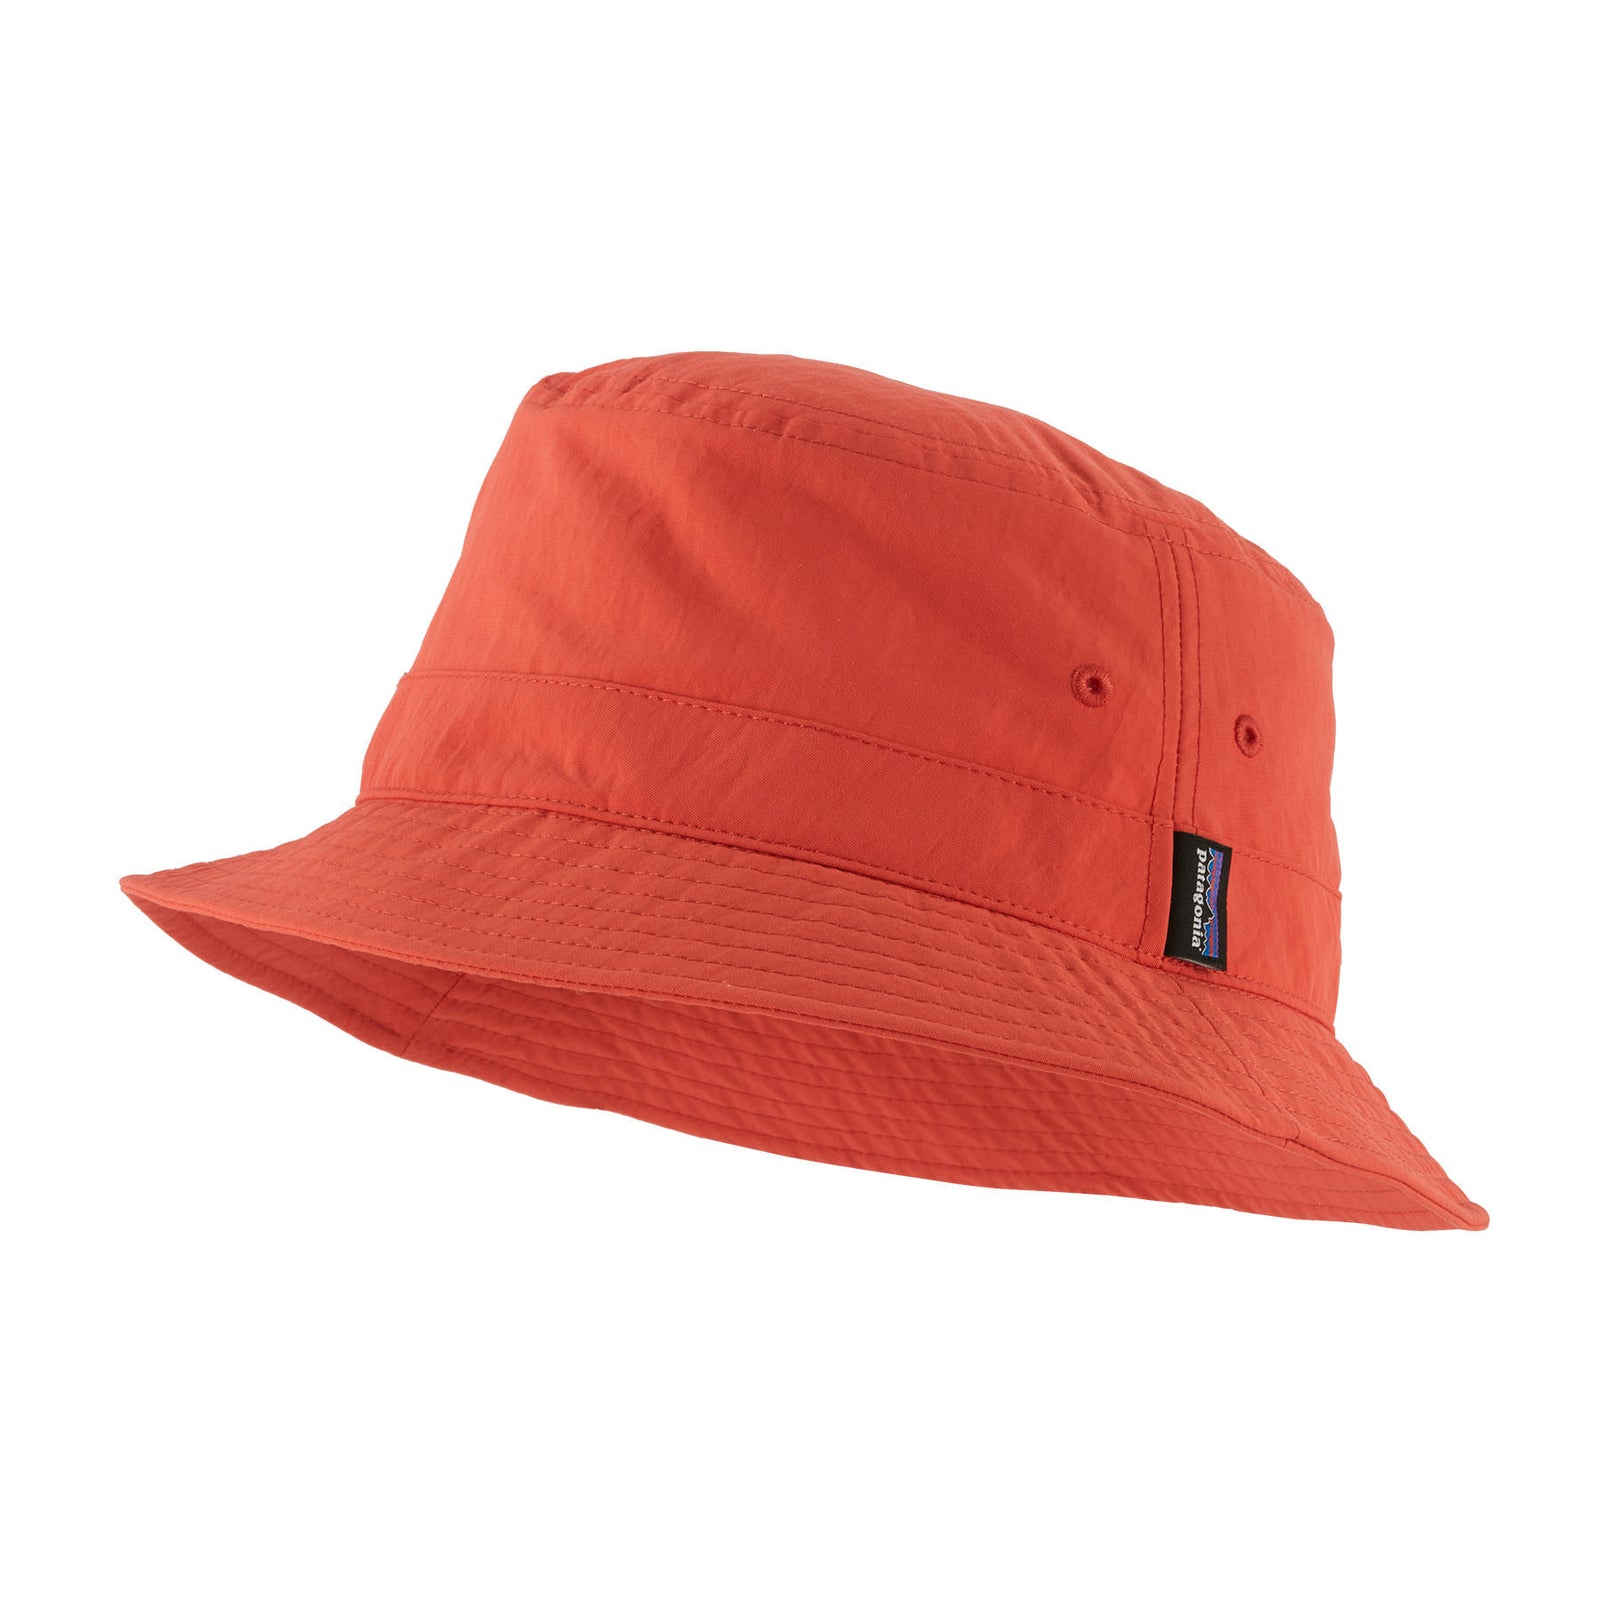 Patagonia Wavefarer Bucket Hat - Hat, Buy online